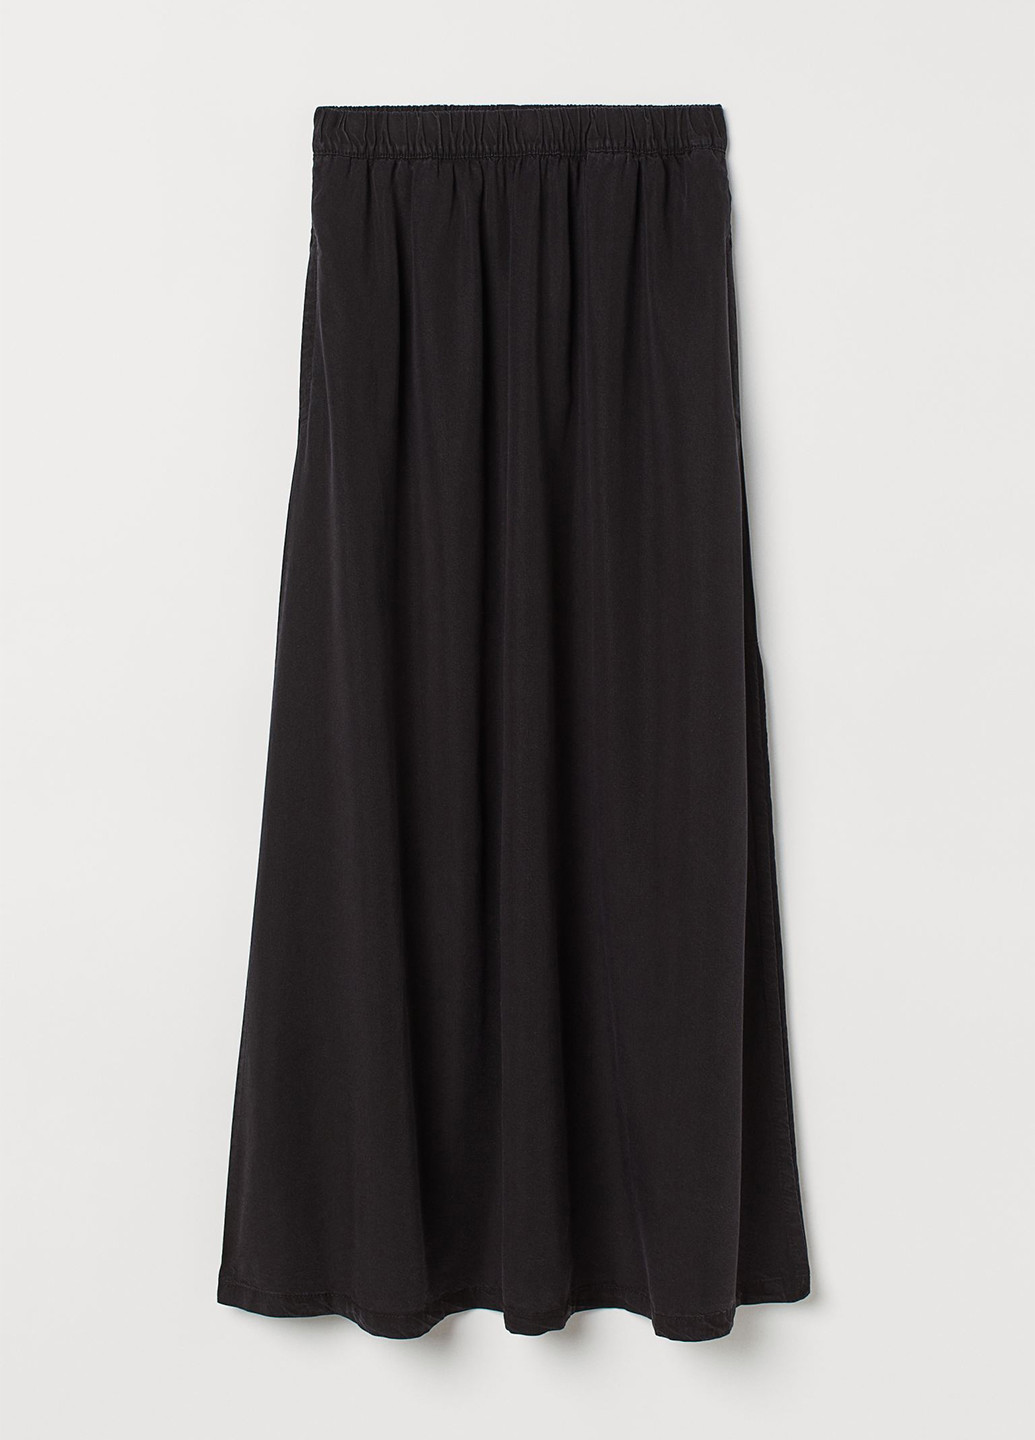 Темно-серая кэжуал однотонная юбка H&M клешированная